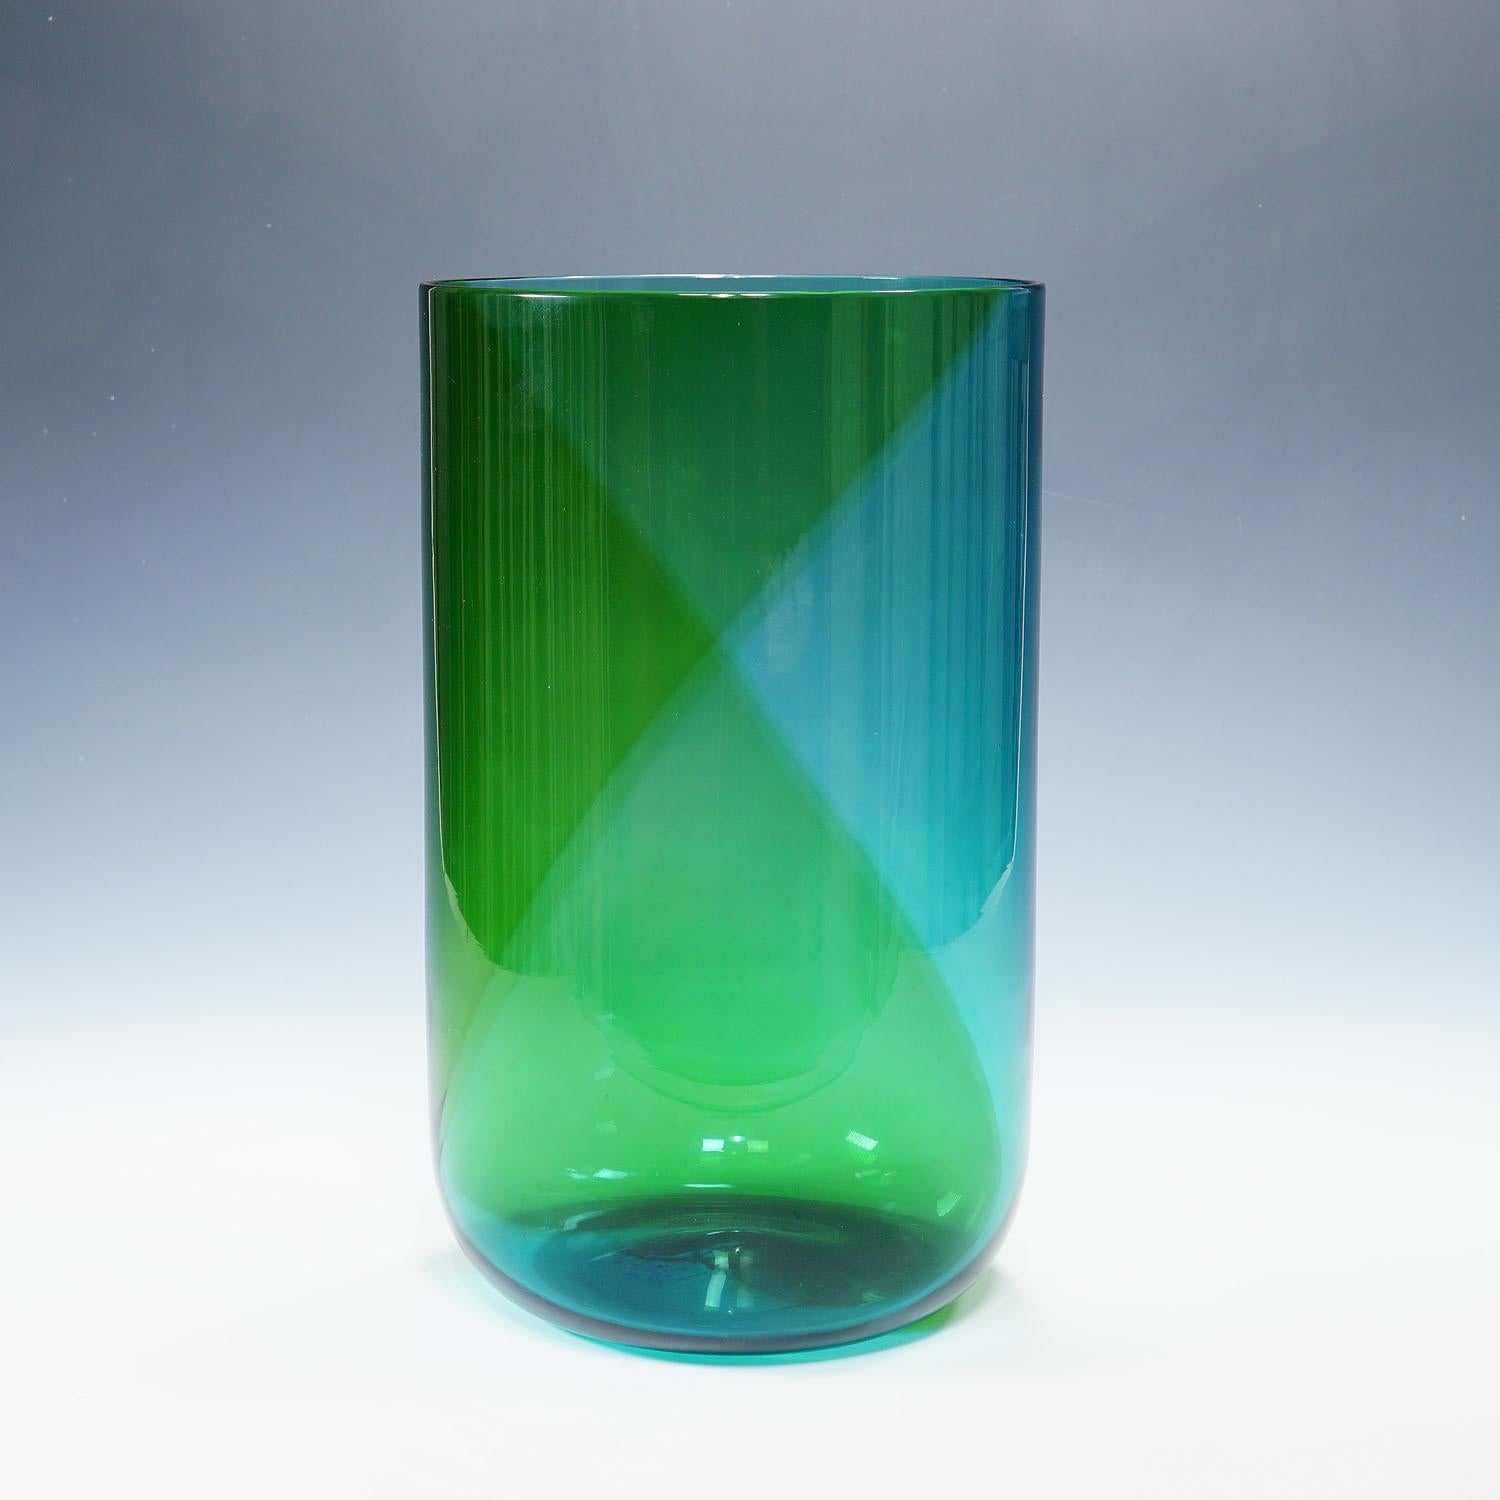 Große Venini-Vase „Coreano“, entworfen von Tapio Wirkkala im Jahr 1966

Eine blau-grüne Vase aus der Serie Coreani mit einer Spirale. 1966 von Tapio Wirkkala für Venini entworfen. Produziert 1983 von Venini, Murano. Eingeschnittene Signatur 